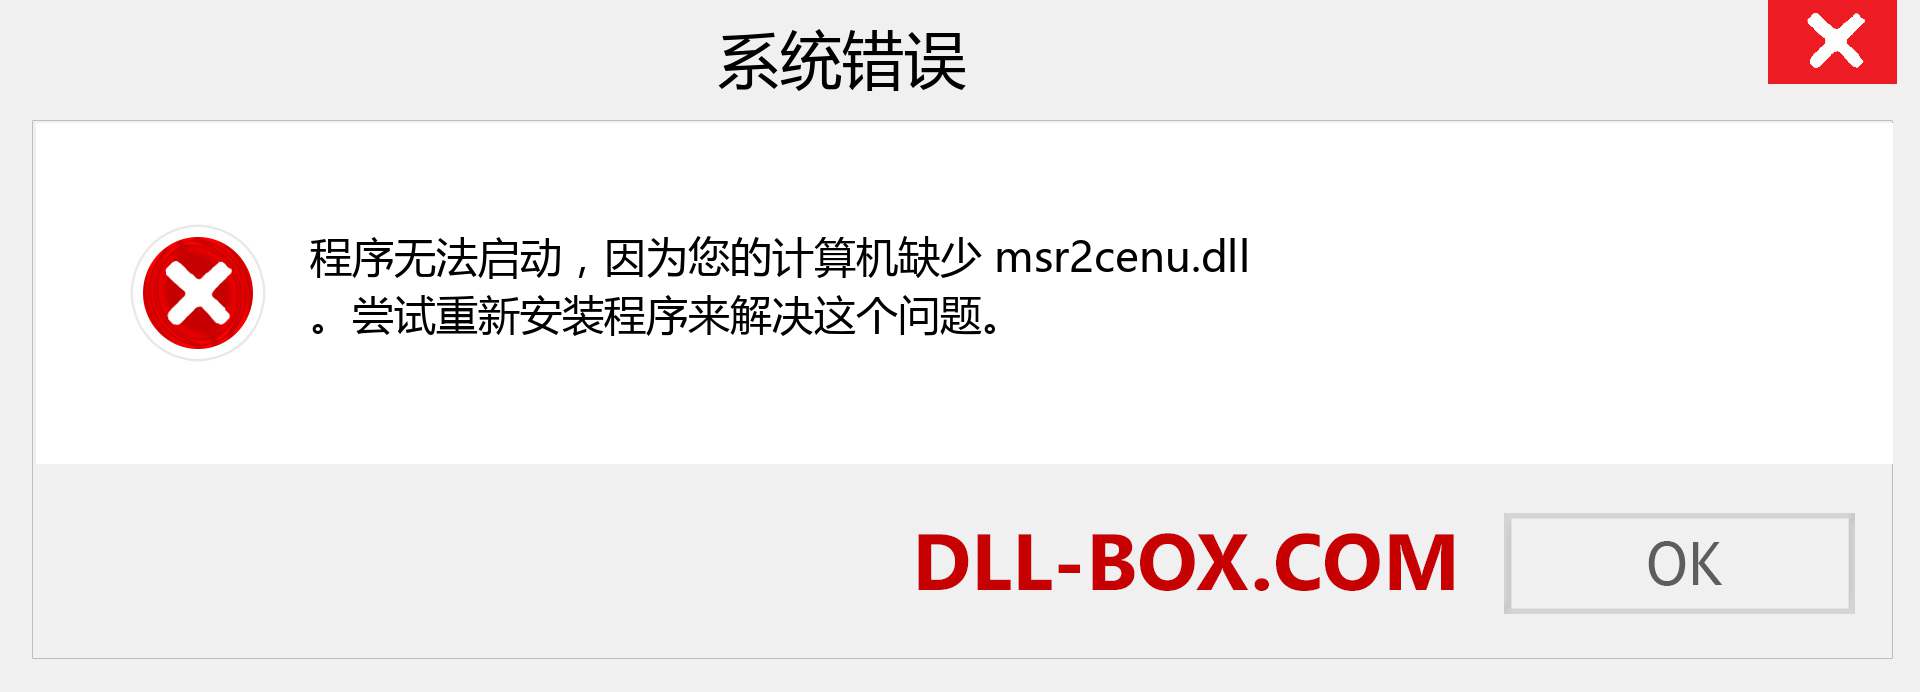 msr2cenu.dll 文件丢失？。 适用于 Windows 7、8、10 的下载 - 修复 Windows、照片、图像上的 msr2cenu dll 丢失错误